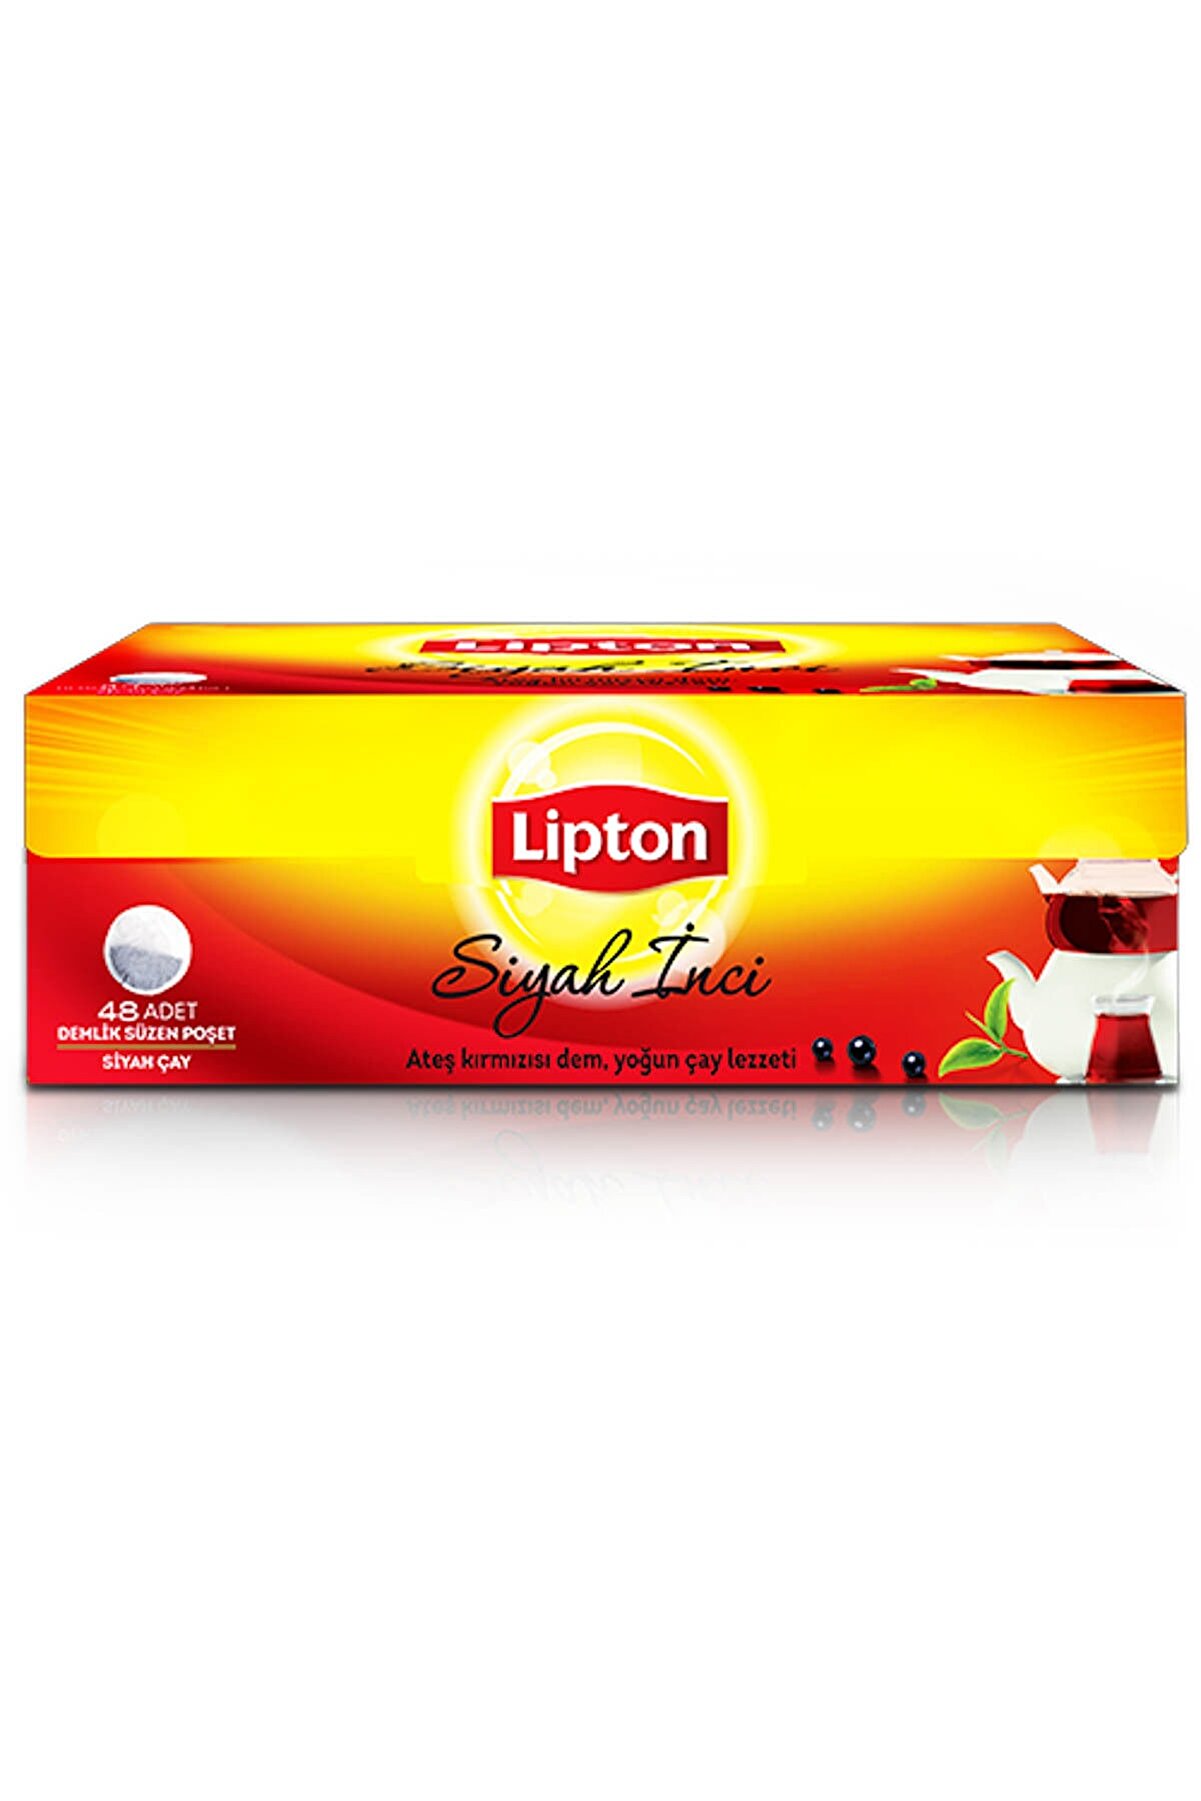 Lipton Extra Dem Demlik Poşet Çay 48'li